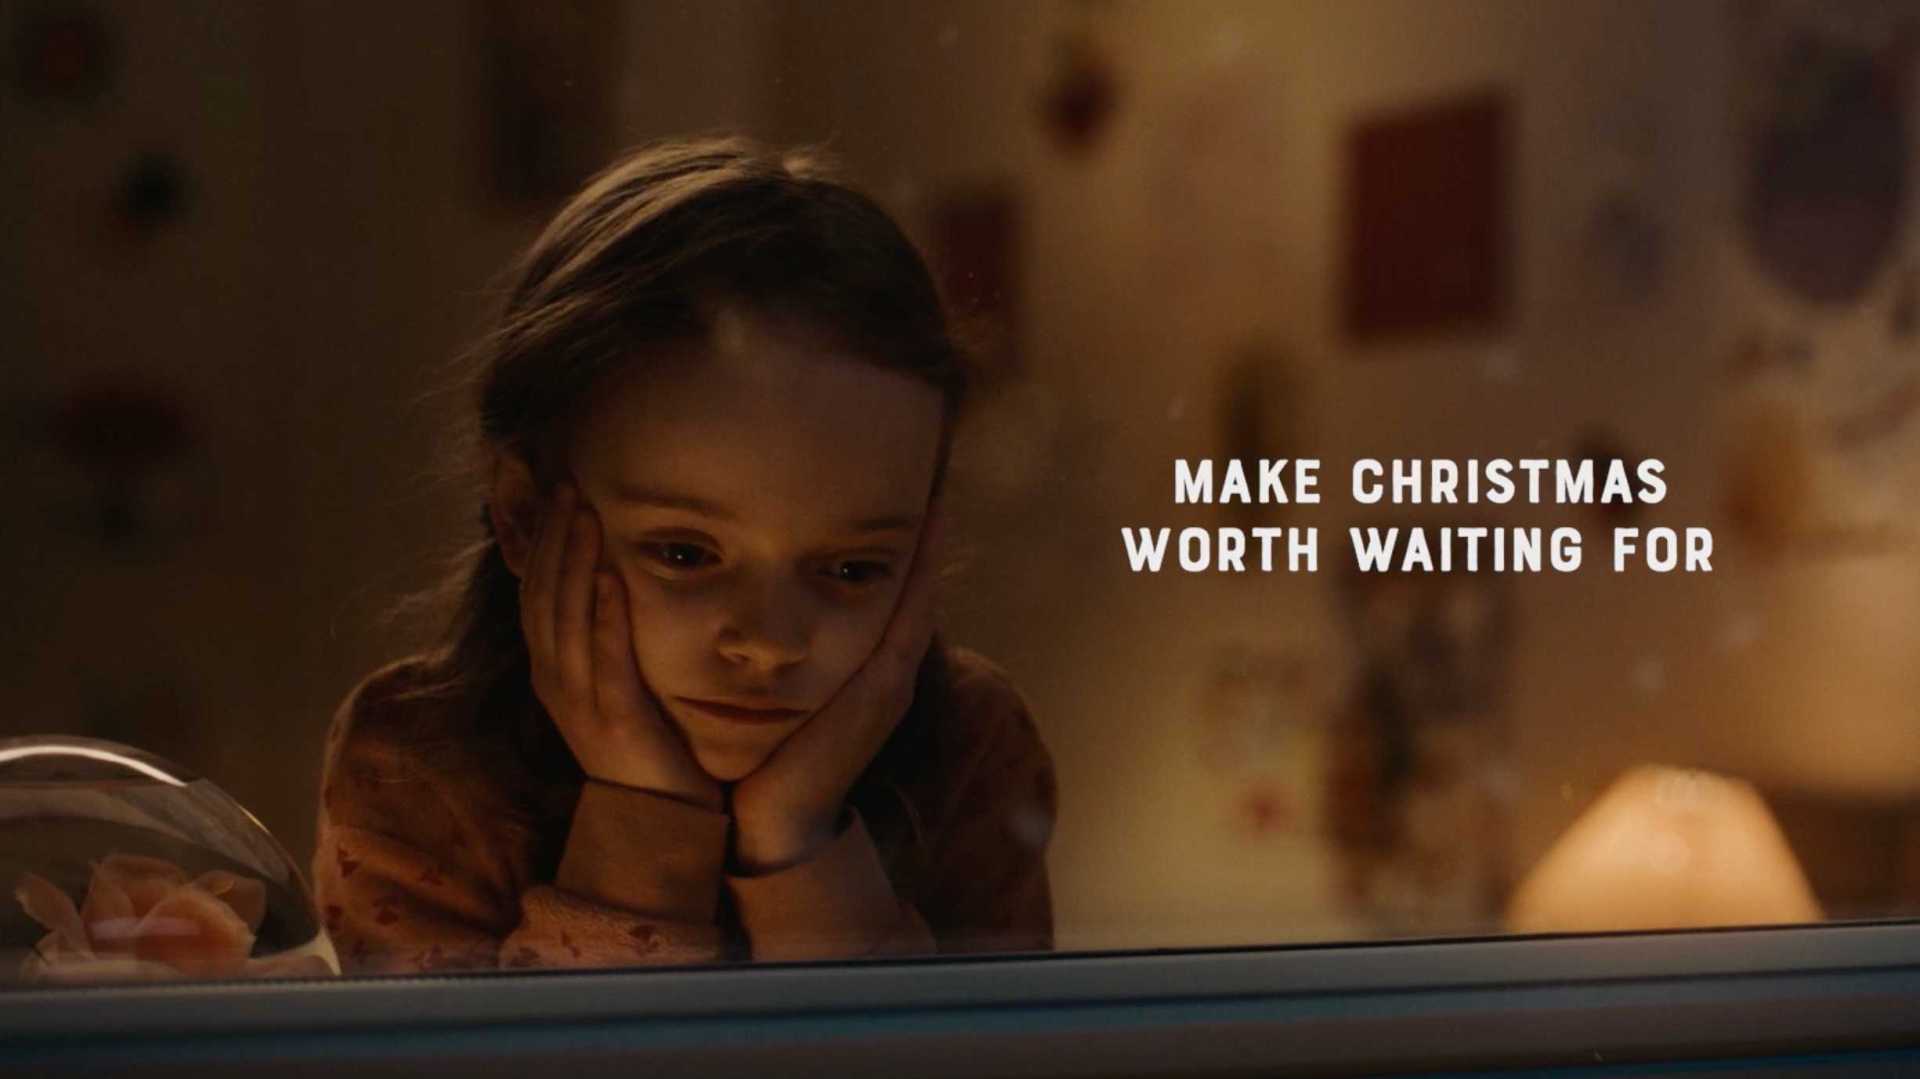 芬兰慈善机构圣诞走心公益宣传片《等待》